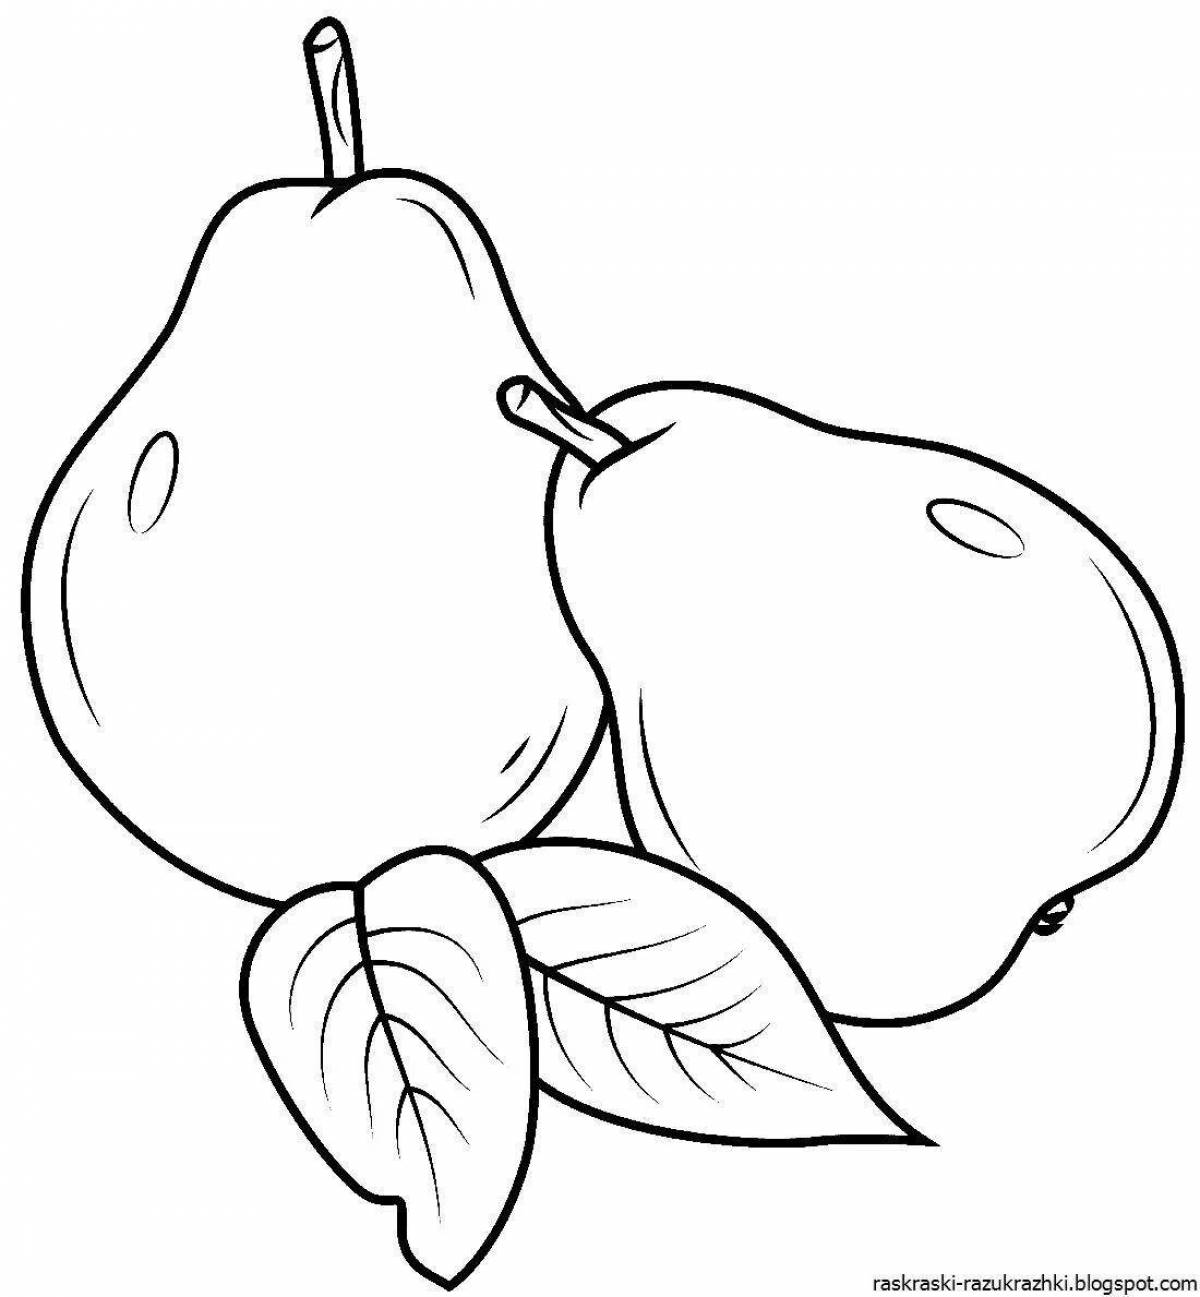 Увлекательная раскраска «яблочная груша»